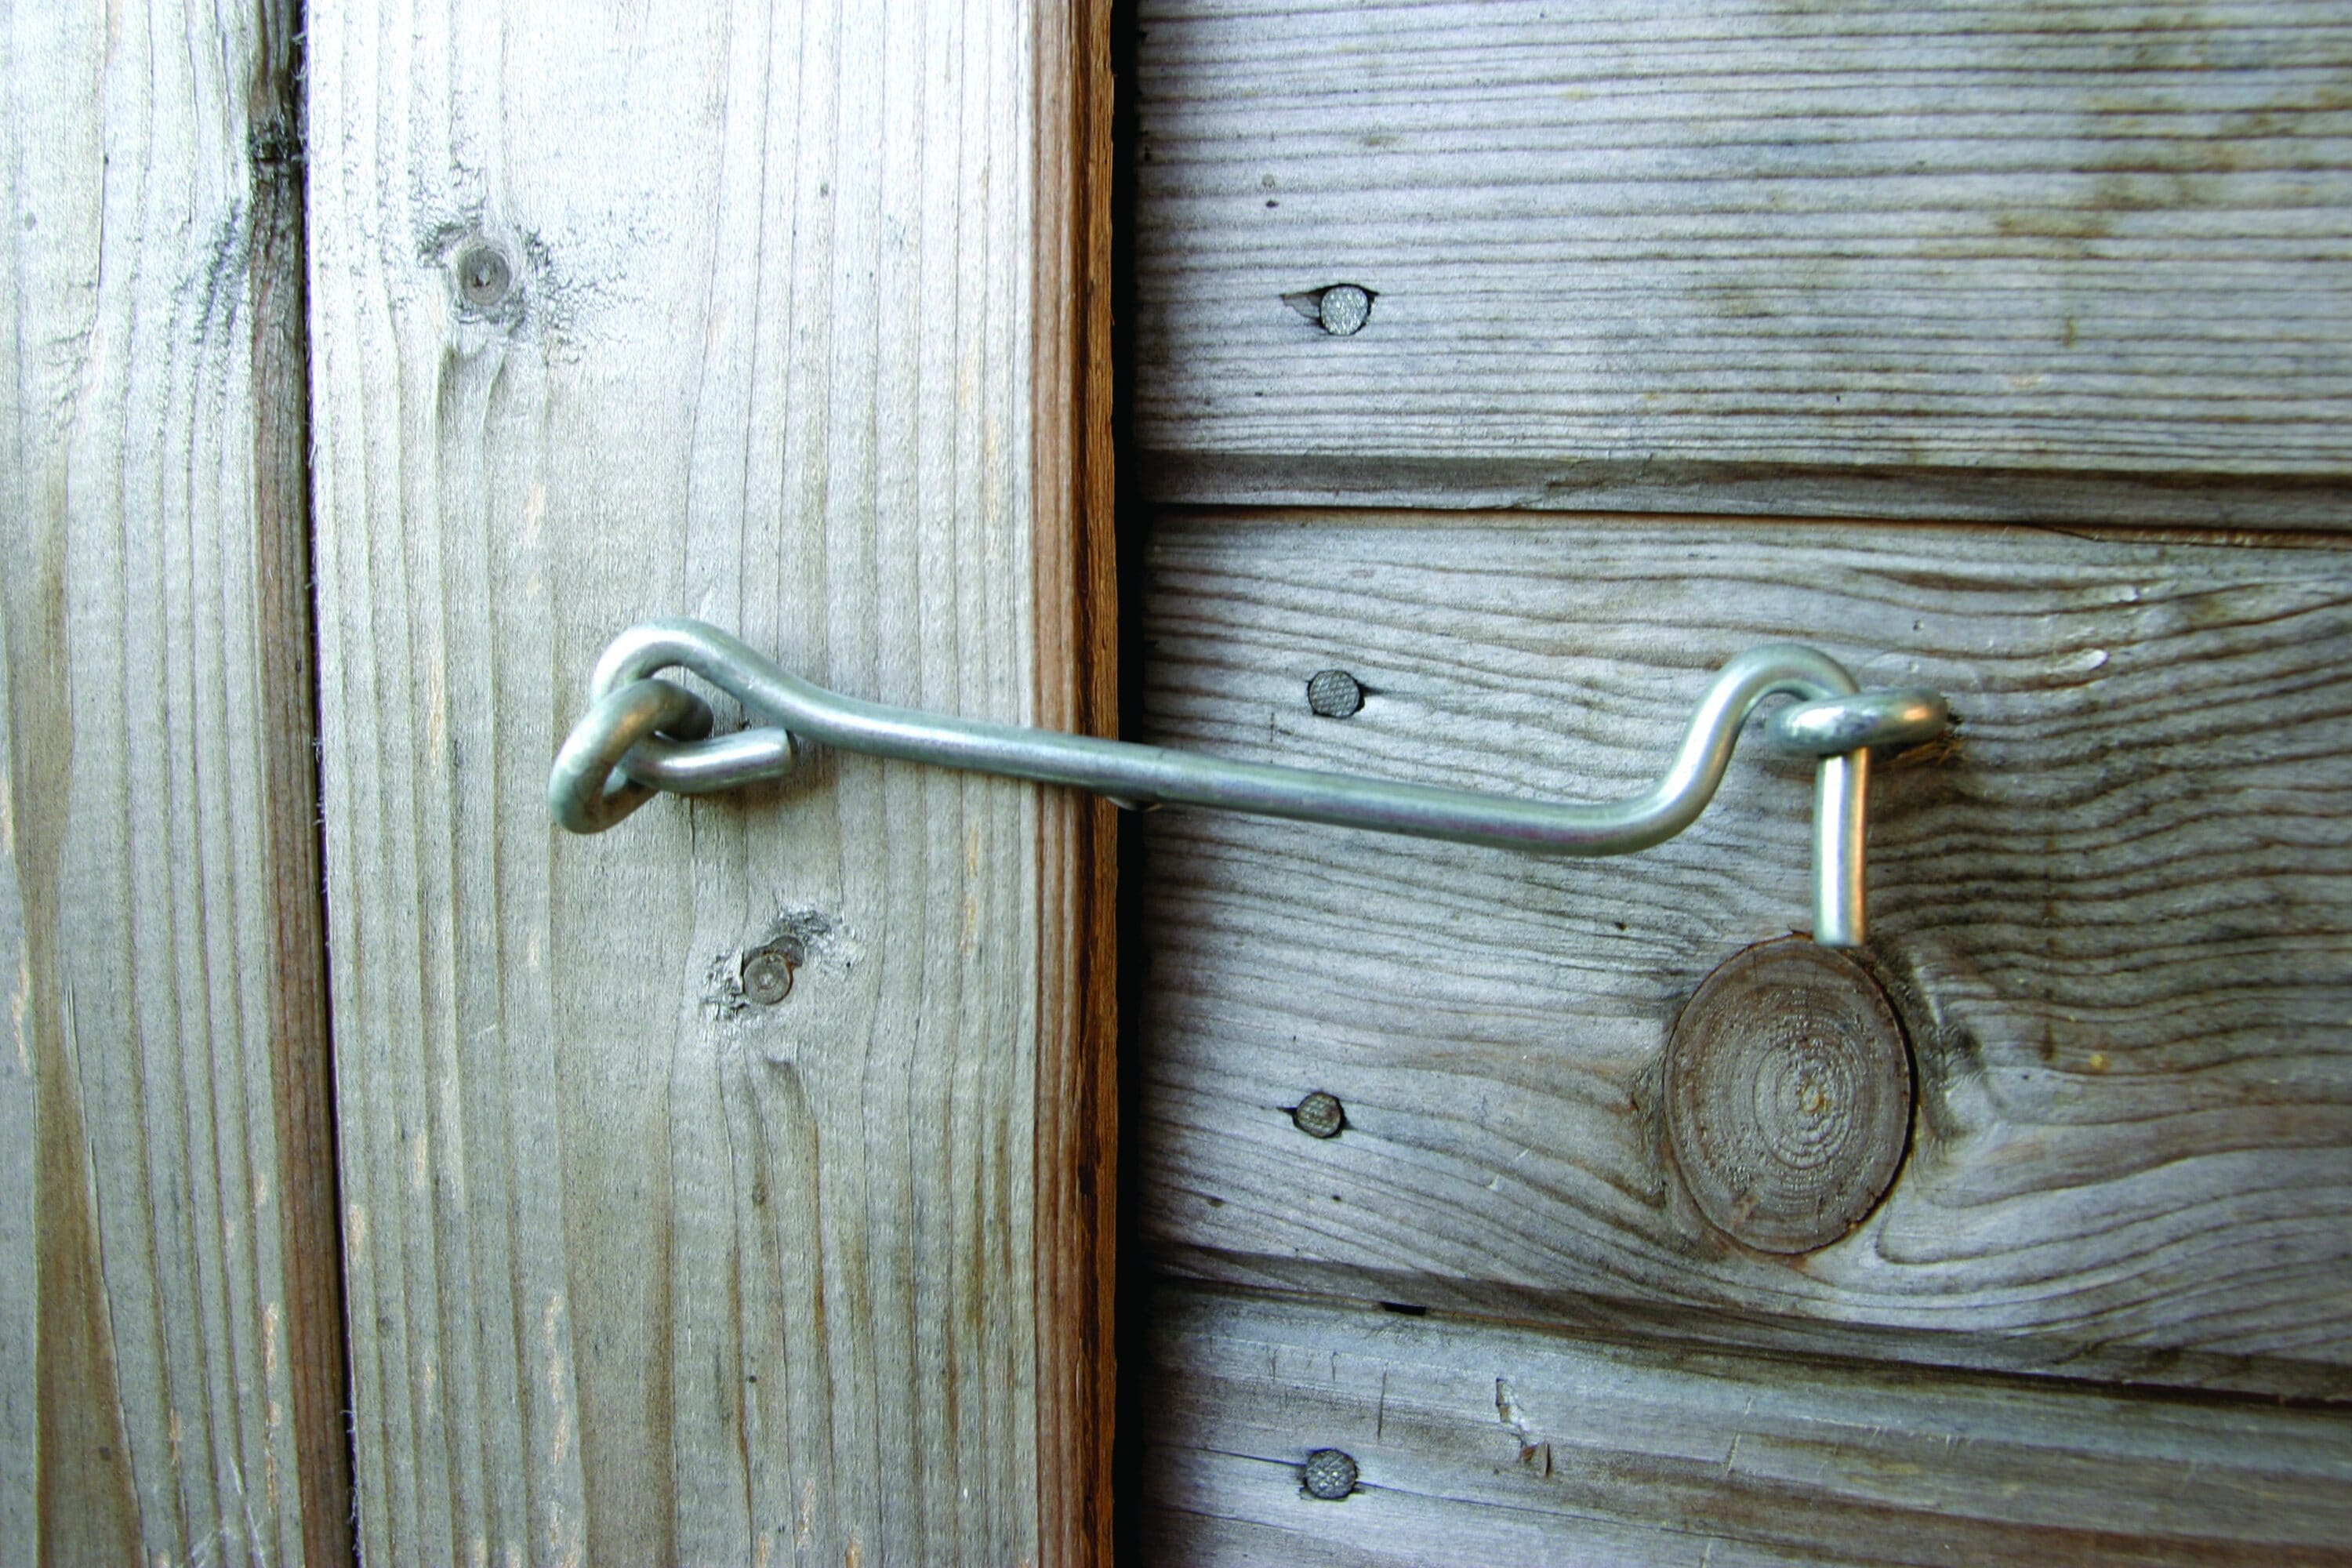 Hillman Hook and Eye Door Latch, Indoor/Outdoor Use, Zinc-Plated, 6-in